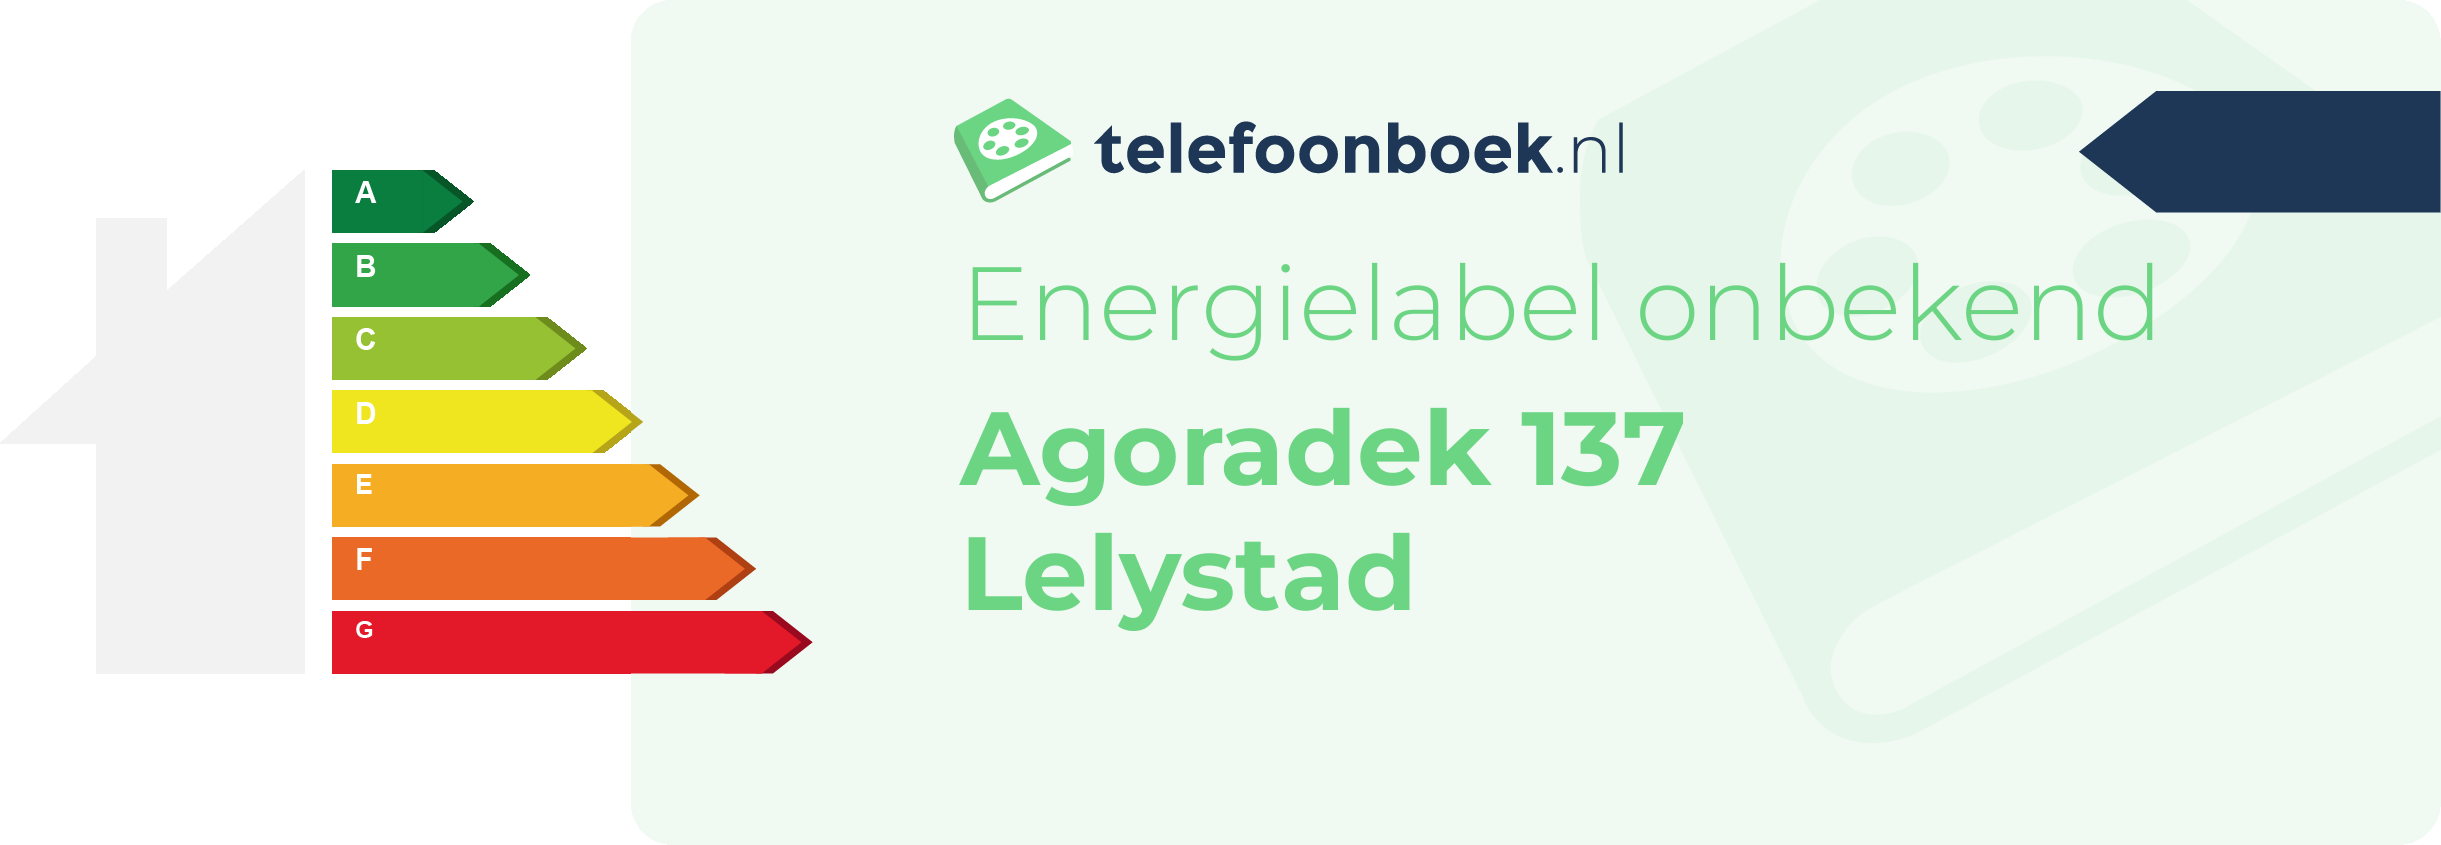 Energielabel Agoradek 137 Lelystad